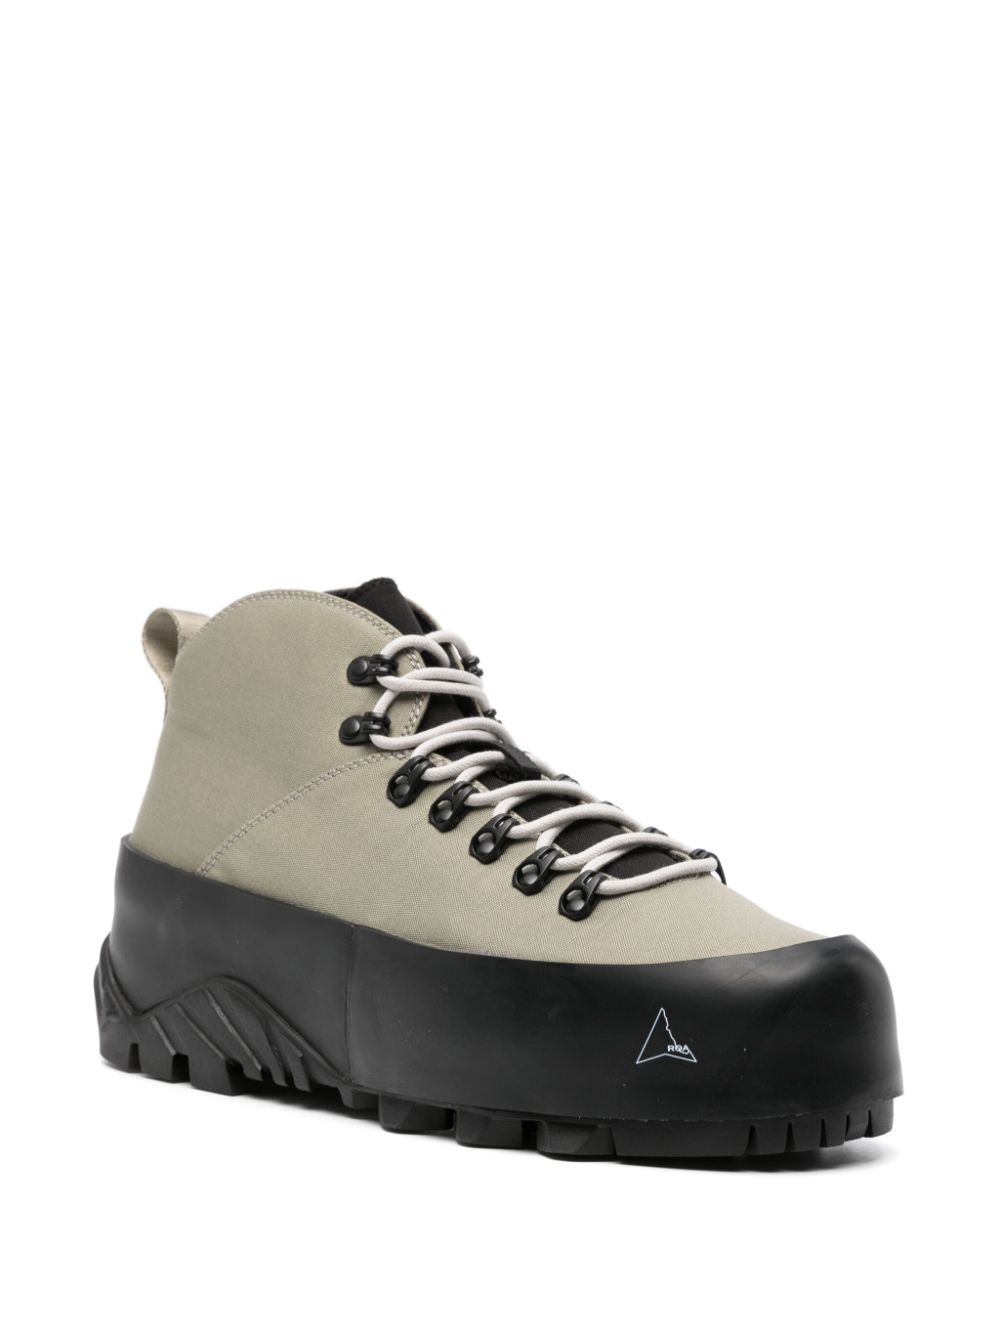 Roa ROA- Cvo Hiking Boots